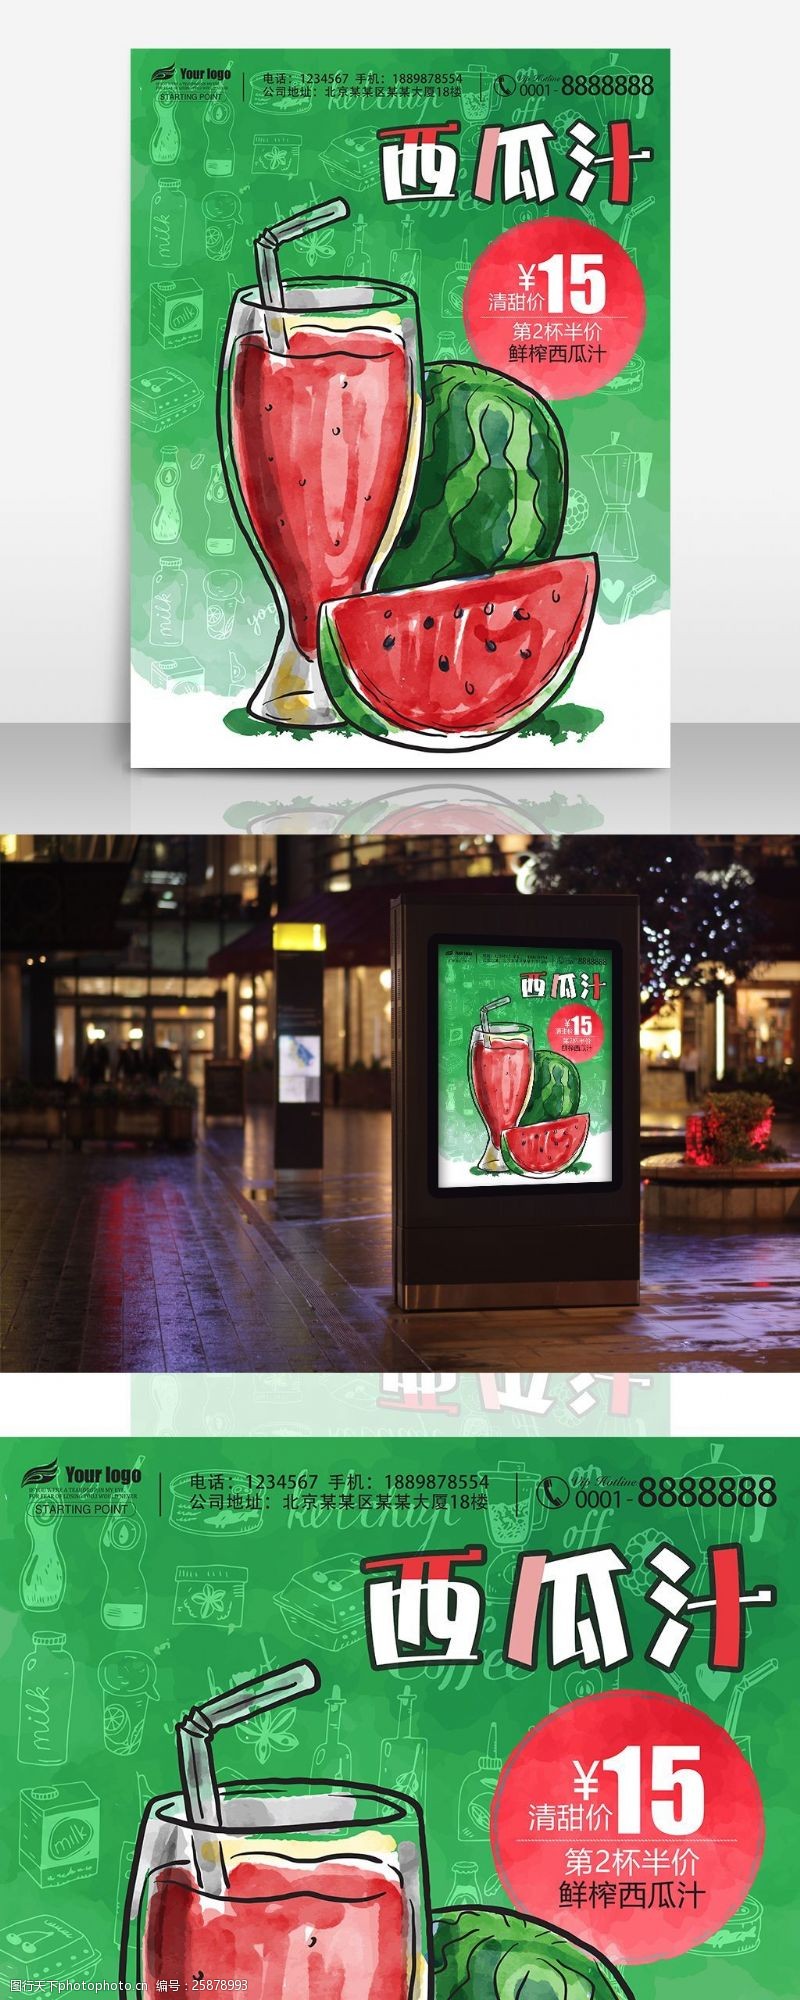 鲜榨果汁免费下载西瓜汁饮品店促销海报